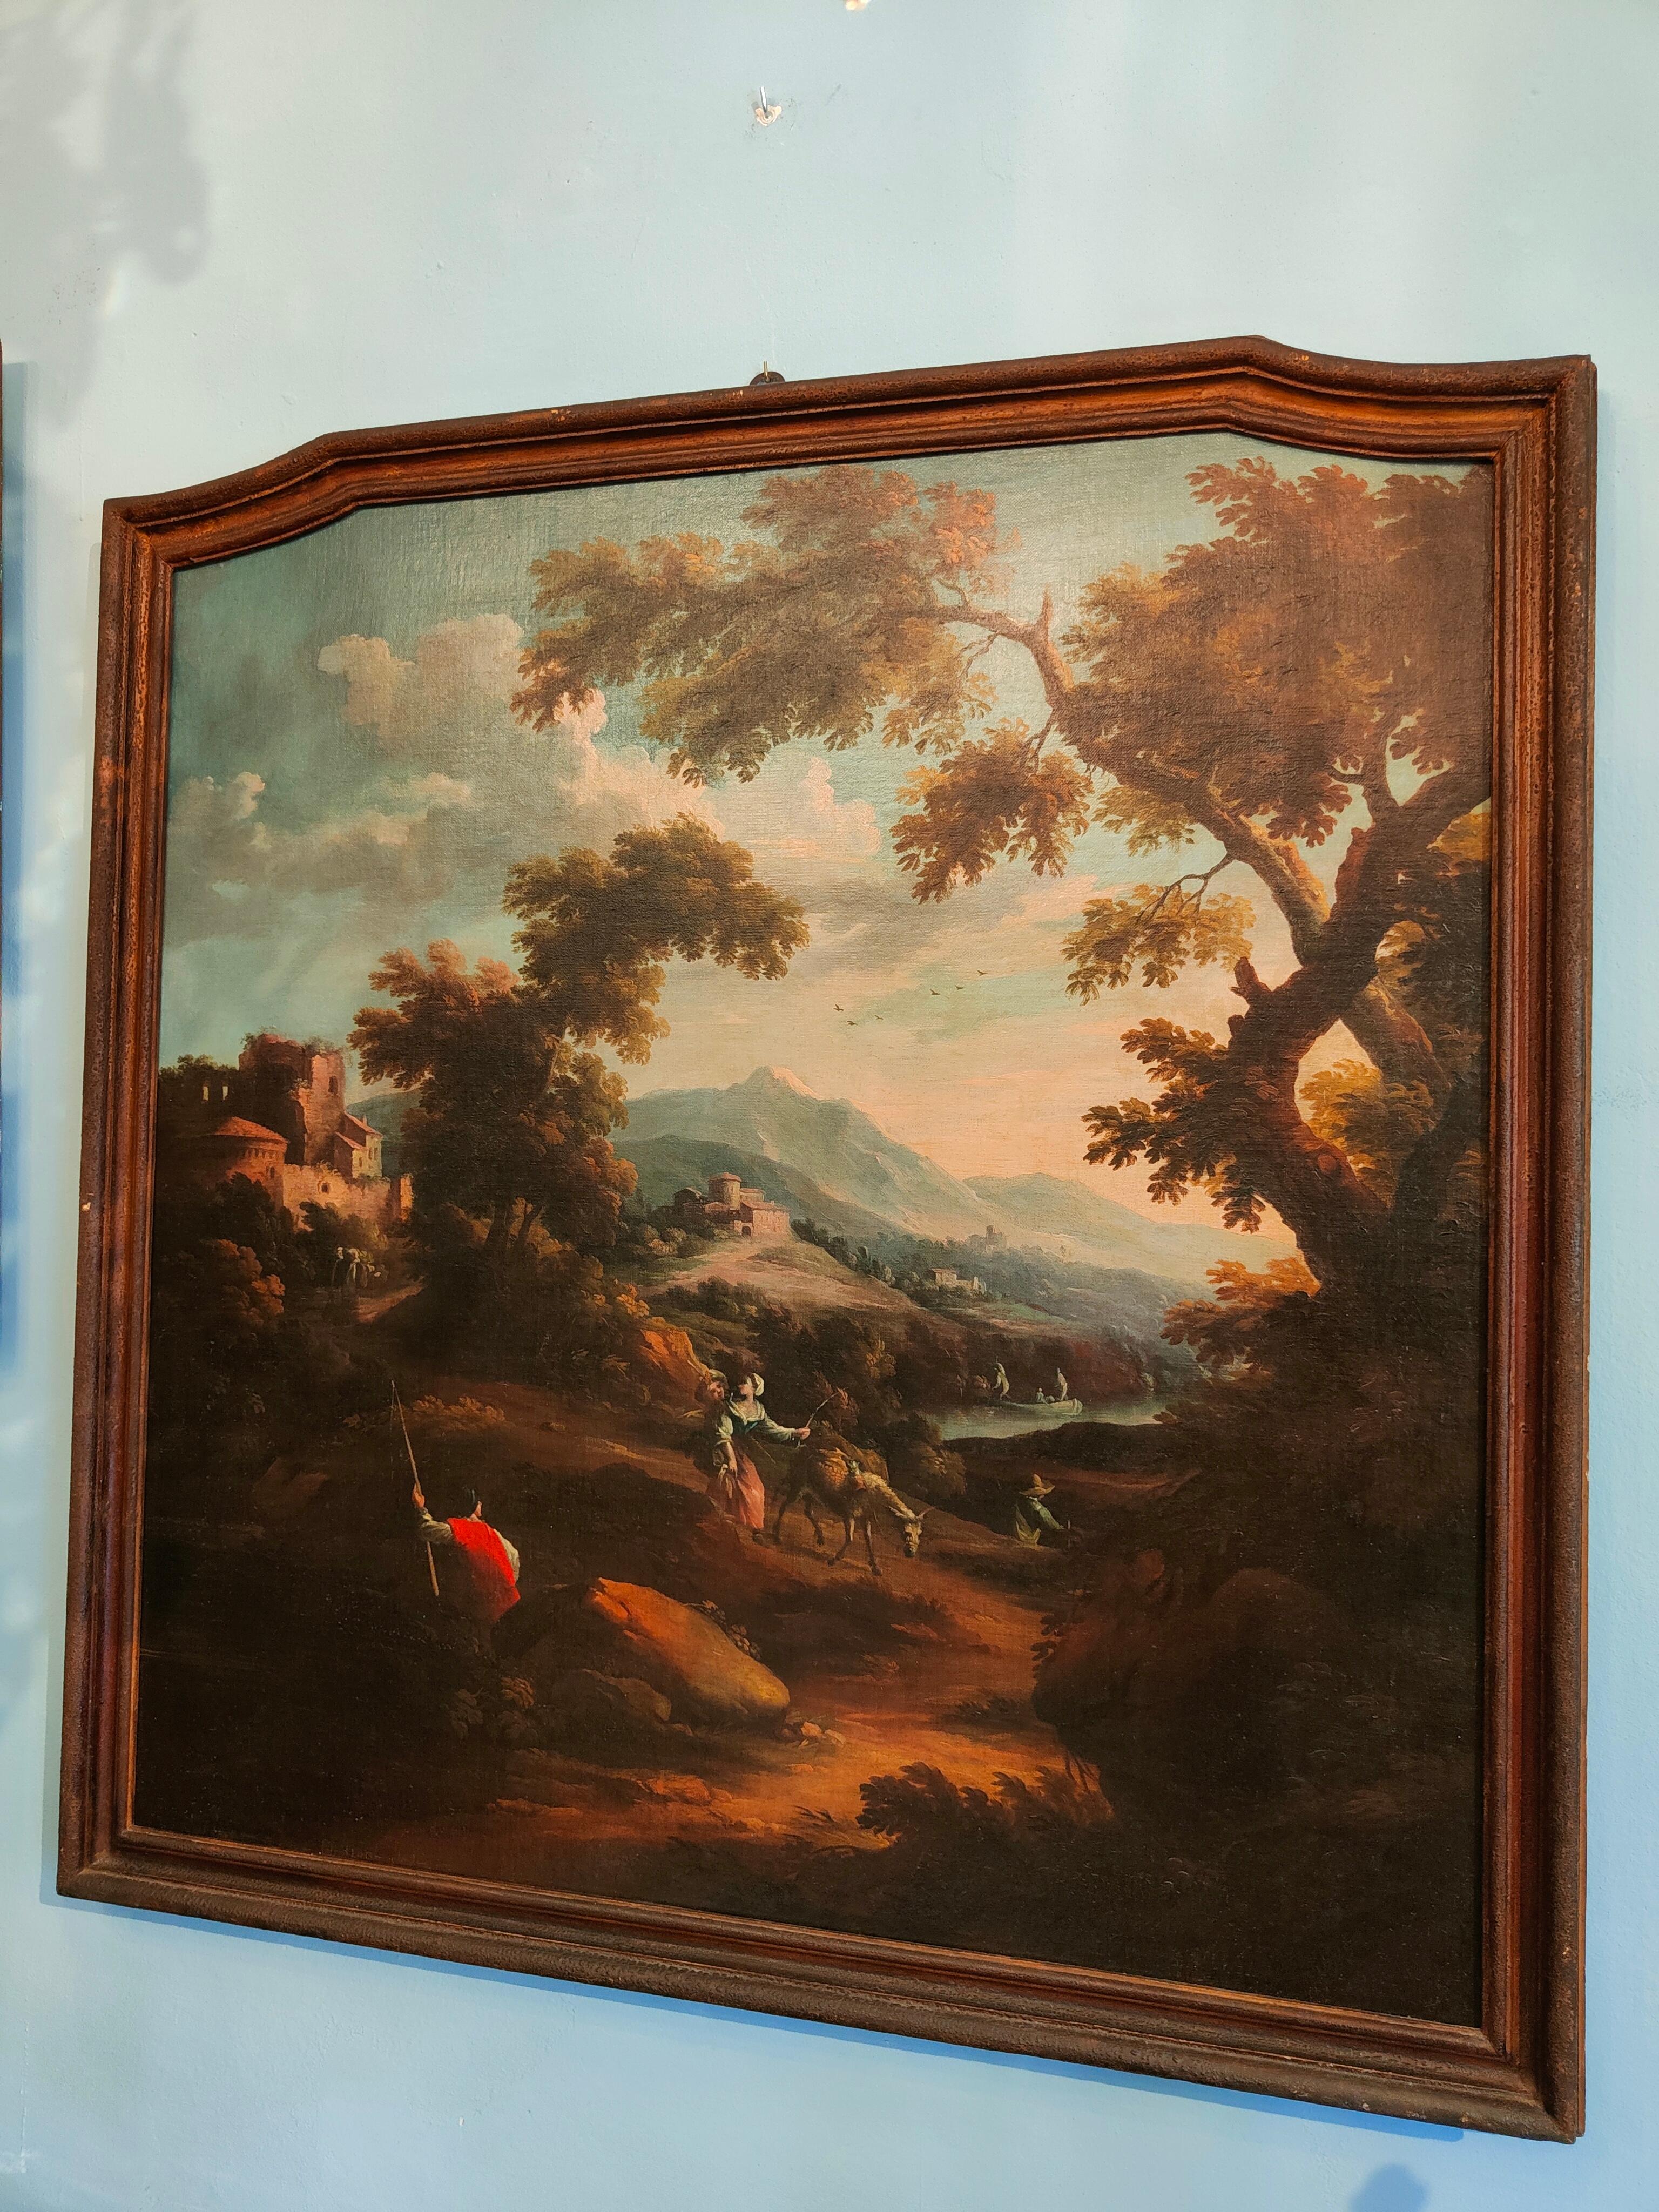 Peinture italienne du XVIIIe siècle du peintre Scipione Cignaroli
La précieuse peinture à l'huile sur toile représente un paysage de la campagne italienne avec des voyageurs sur les rives du fleuve, avec un cadre contemporain (XVIIIe siècle).
Le